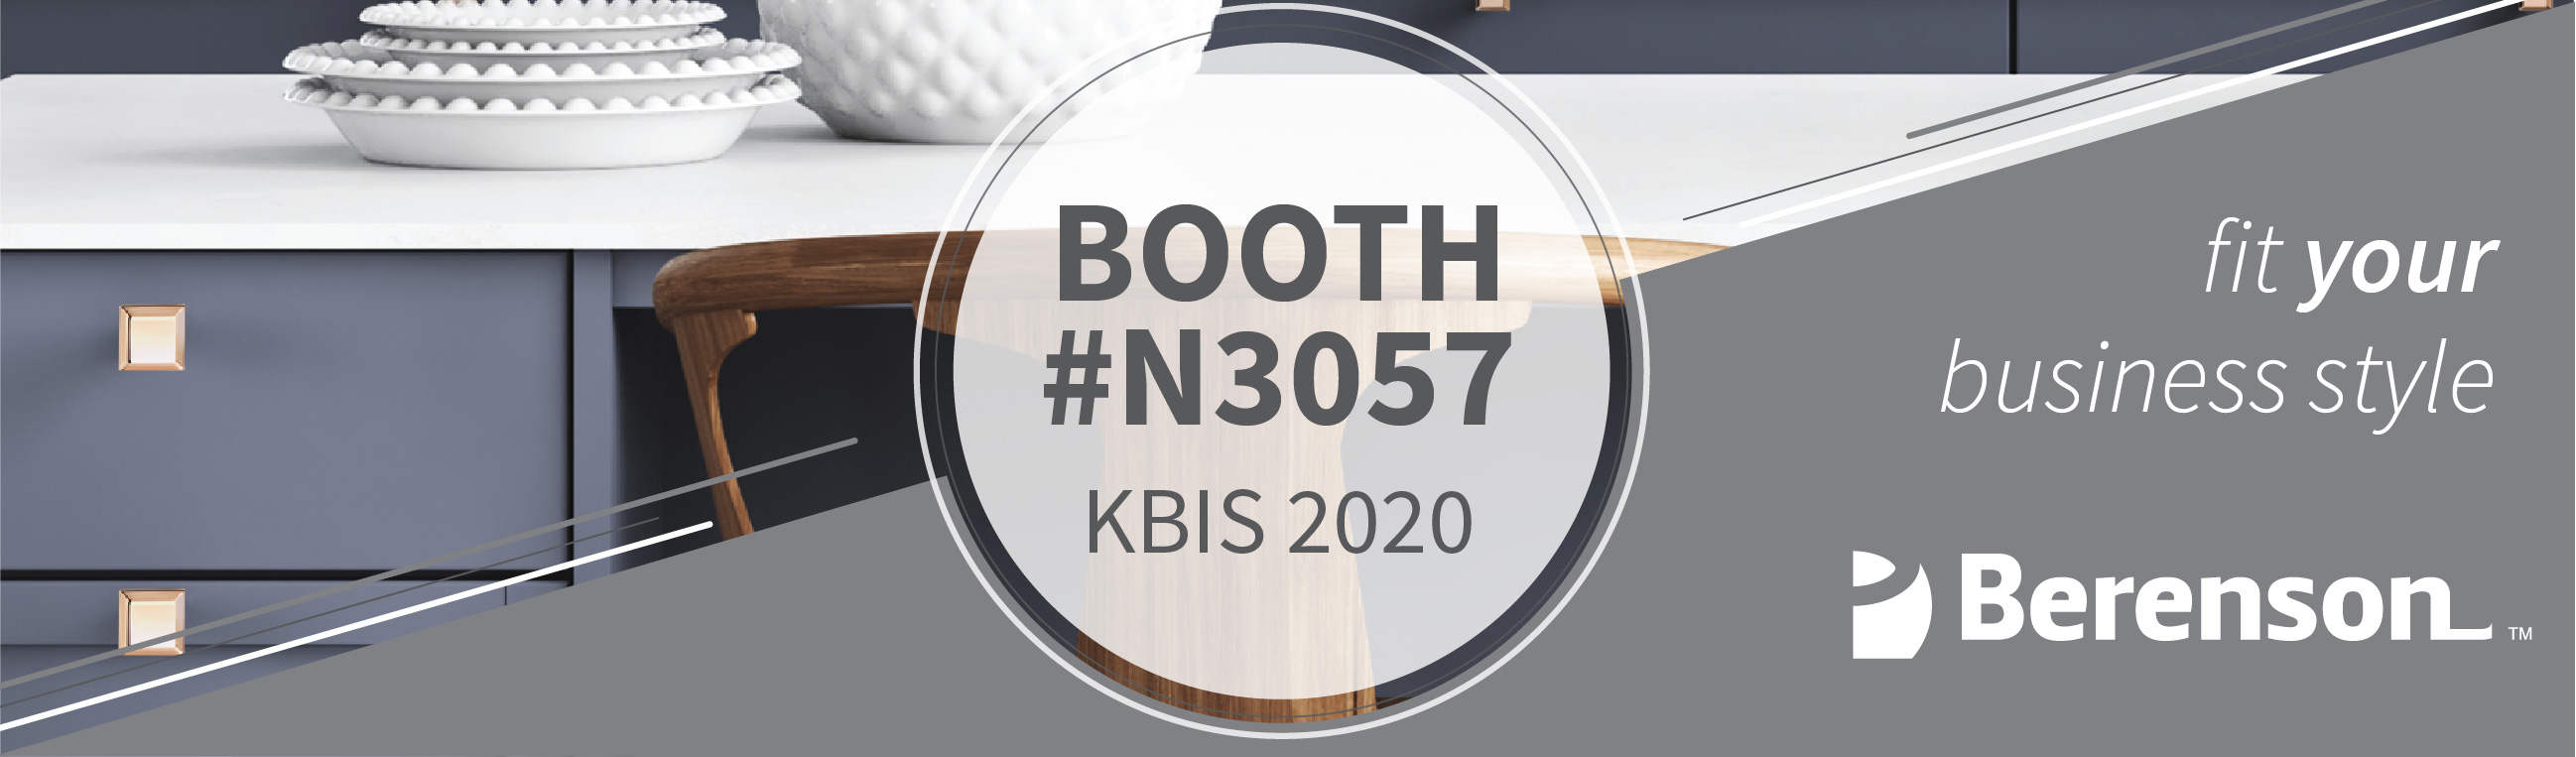 Berenson Hardware KBIS Booth 2020